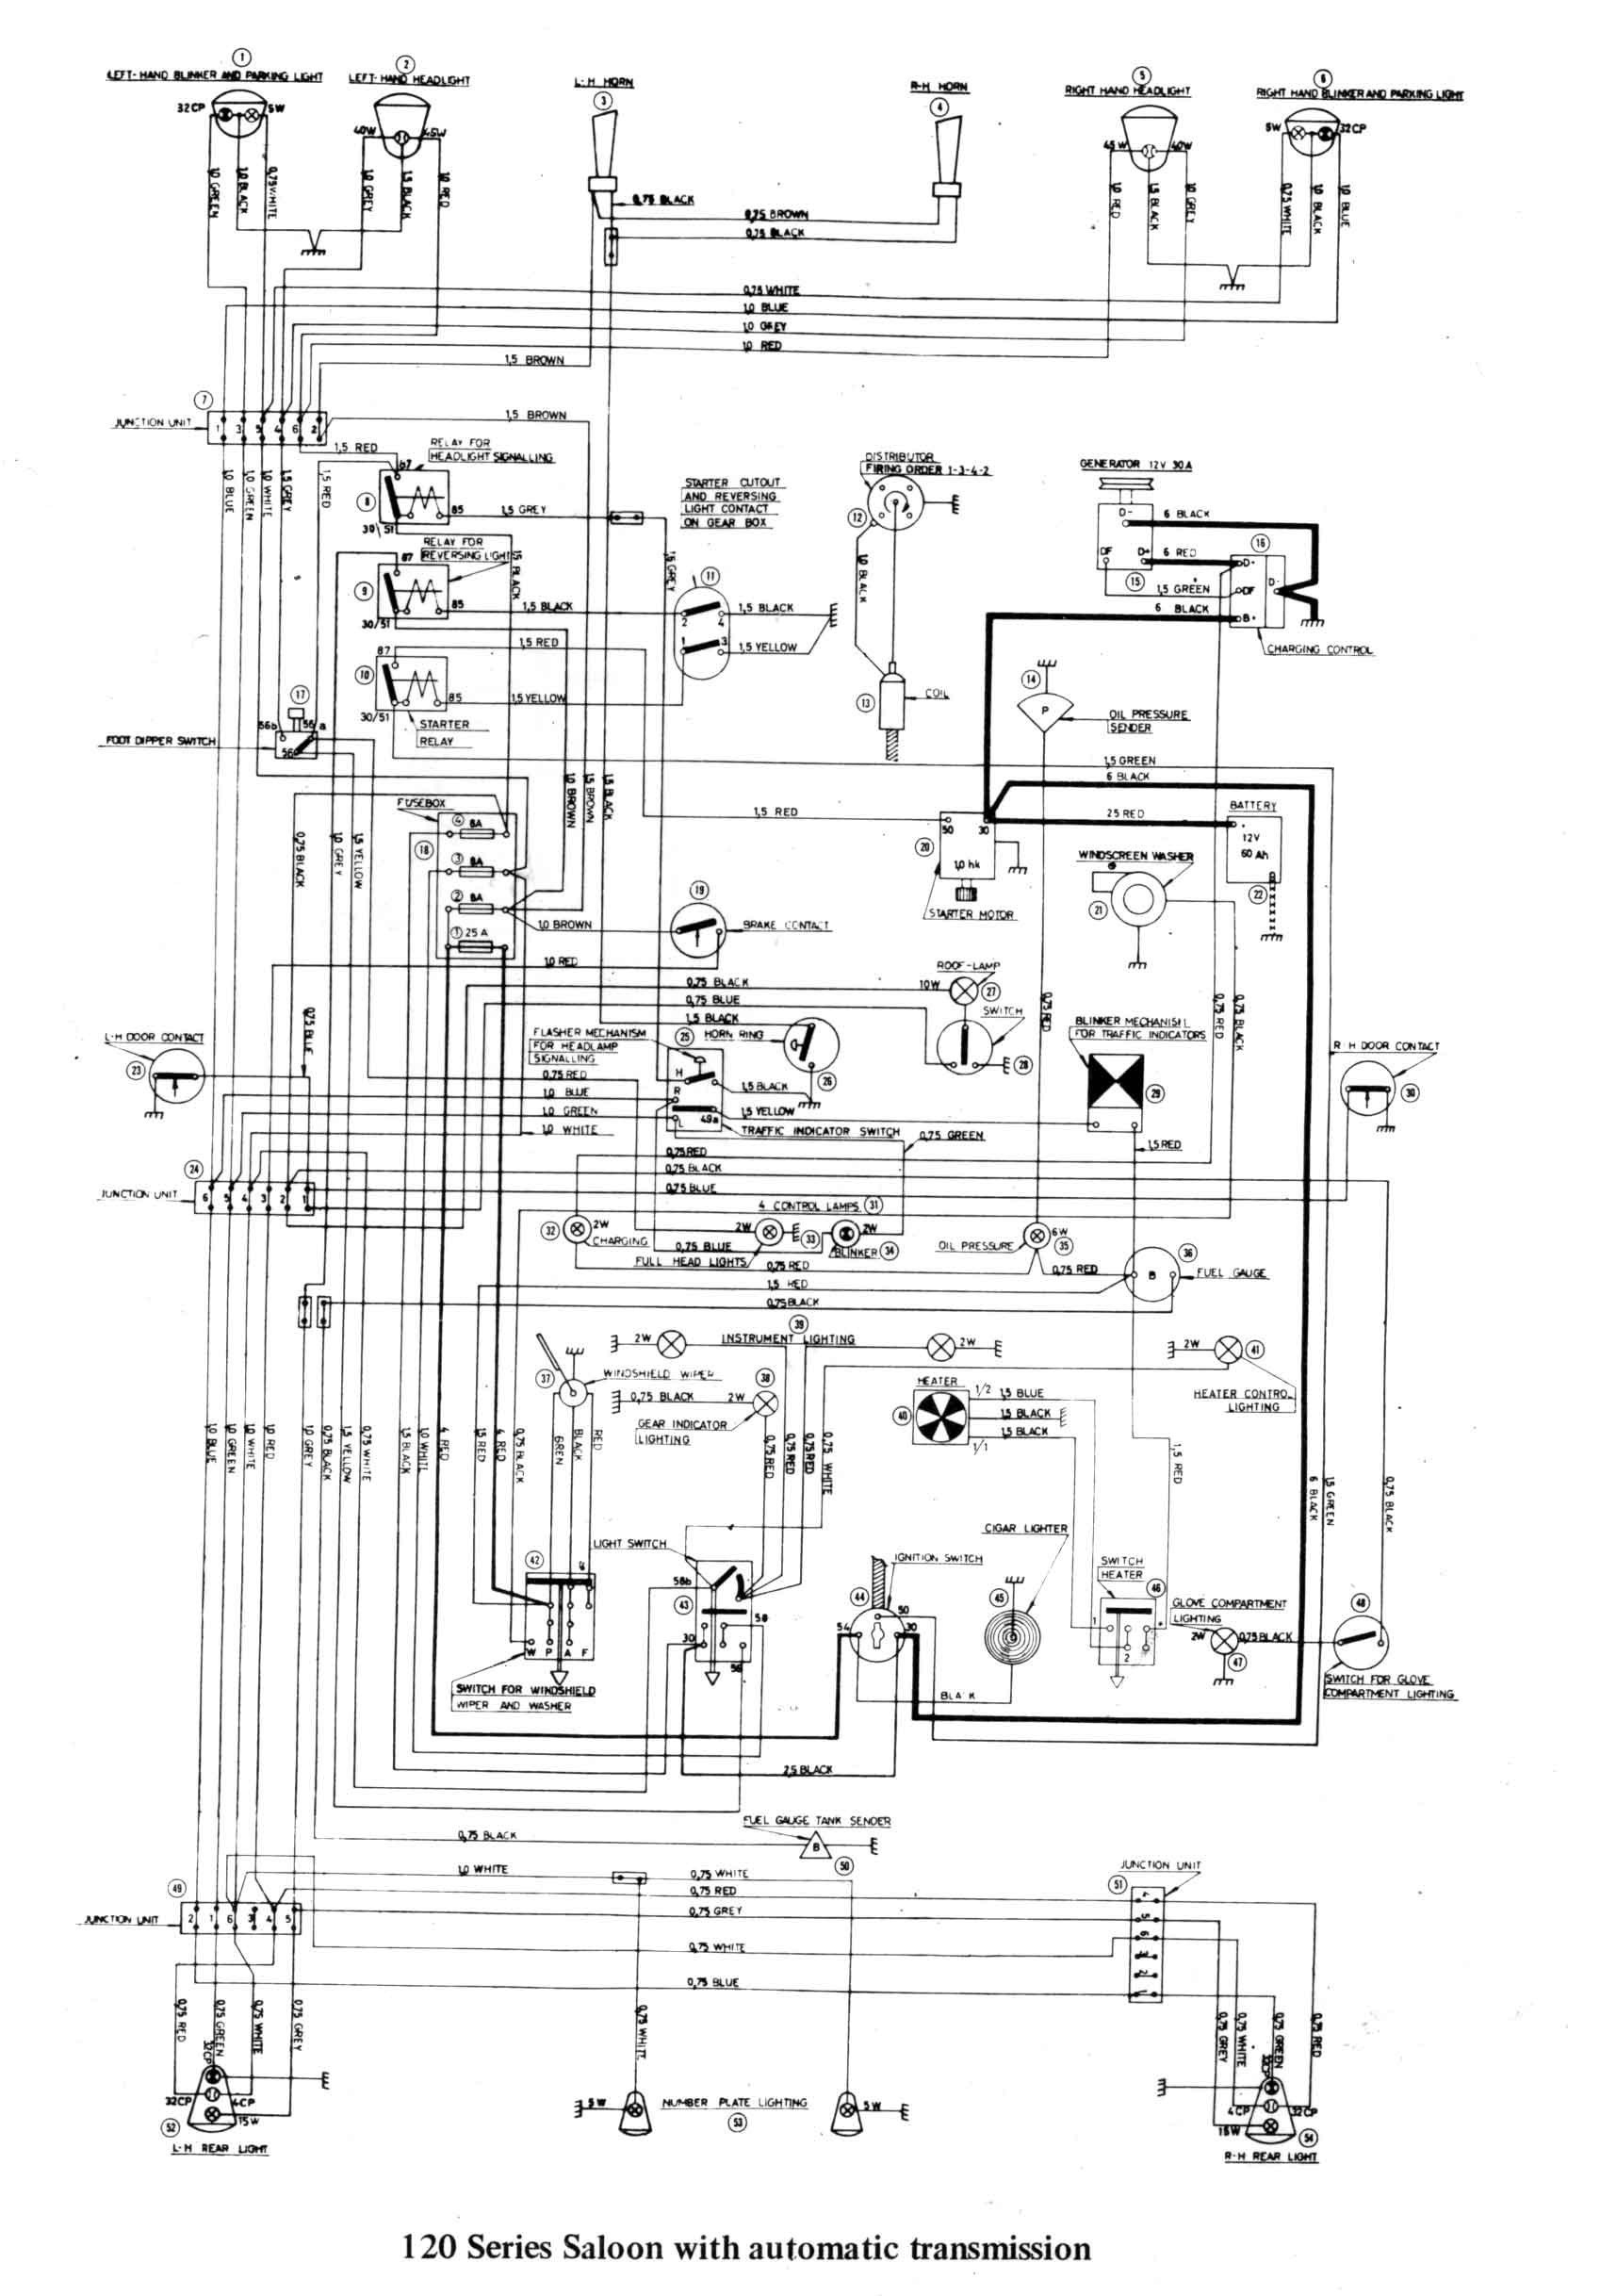 wiring diagrams for yamaha golf carts valid ezgo wiring diagram of ezgo golf cart wiring diagram